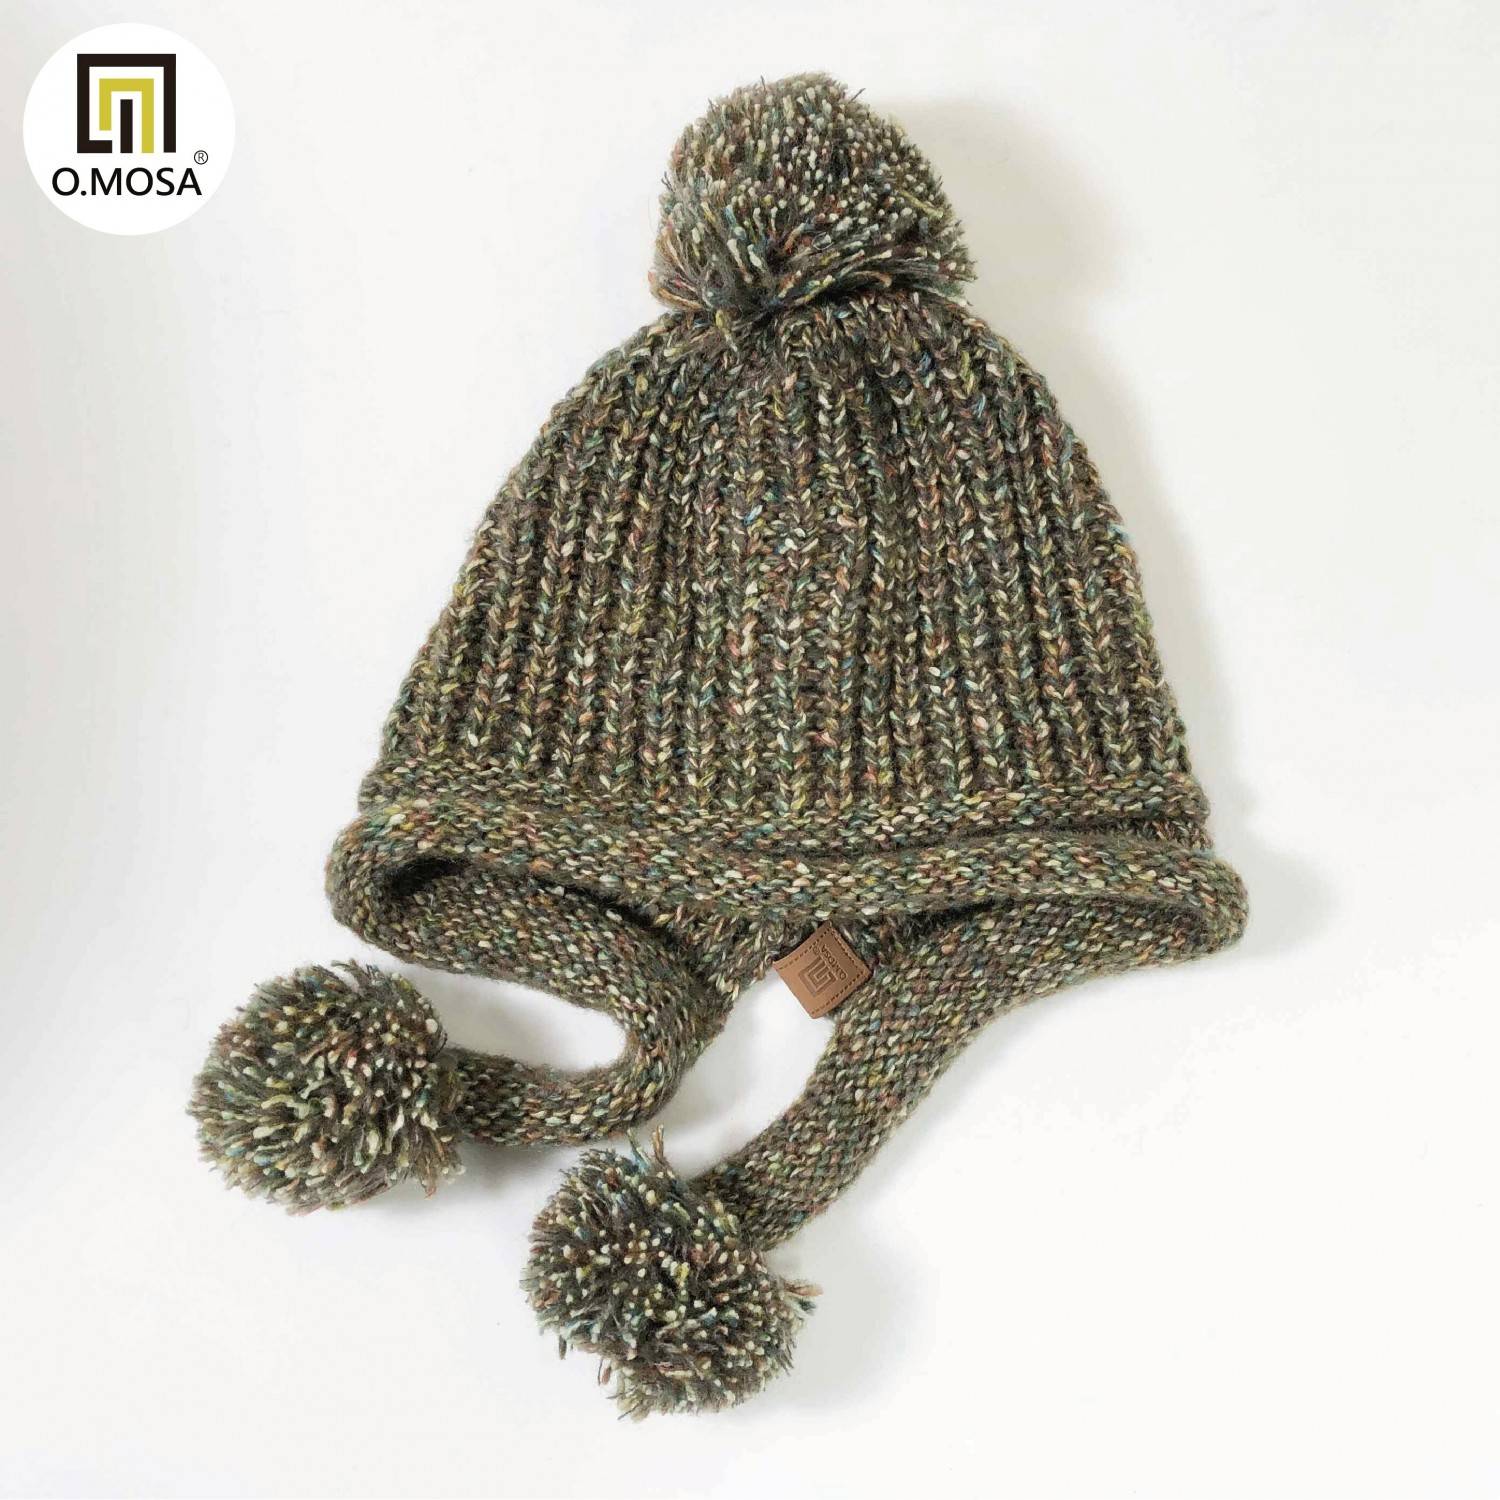 O.MOSA 秘魯羊駝毛玉米泡泡針造型毛球可機洗針織帽(寶石橄綠)